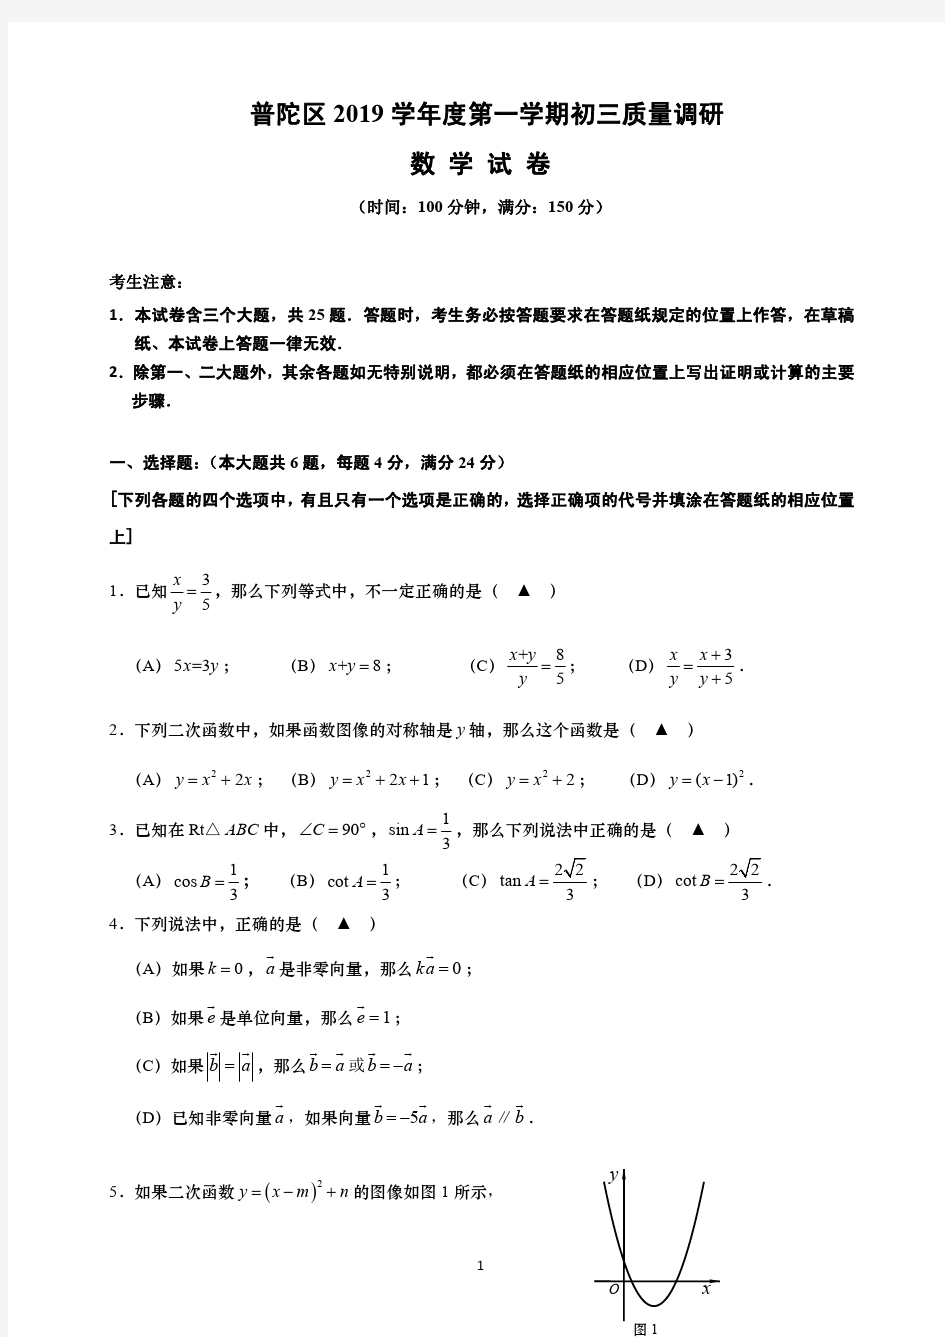 2020年上海市各区初中数学一模试卷含答案(打印版)_20200217102931